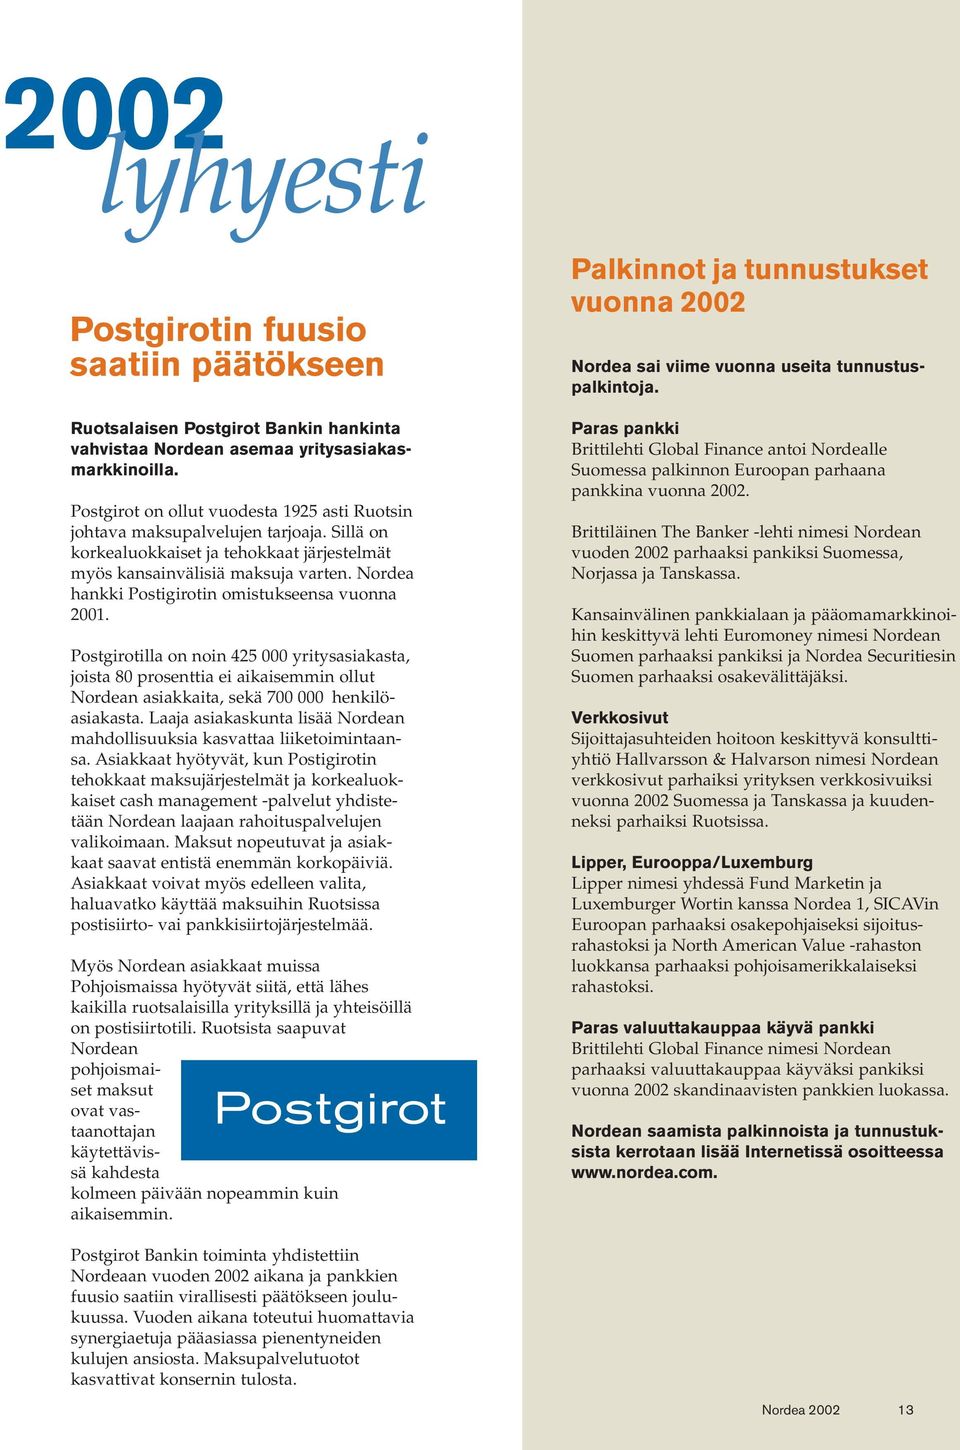 Nordea hankki Postigirotin omistukseensa vuonna 2001. Postgirotilla on noin 425 000 yritysasiakasta, joista 80 prosenttia ei aikaisemmin ollut Nordean asiakkaita, sekä 700 000 henkilöasiakasta.